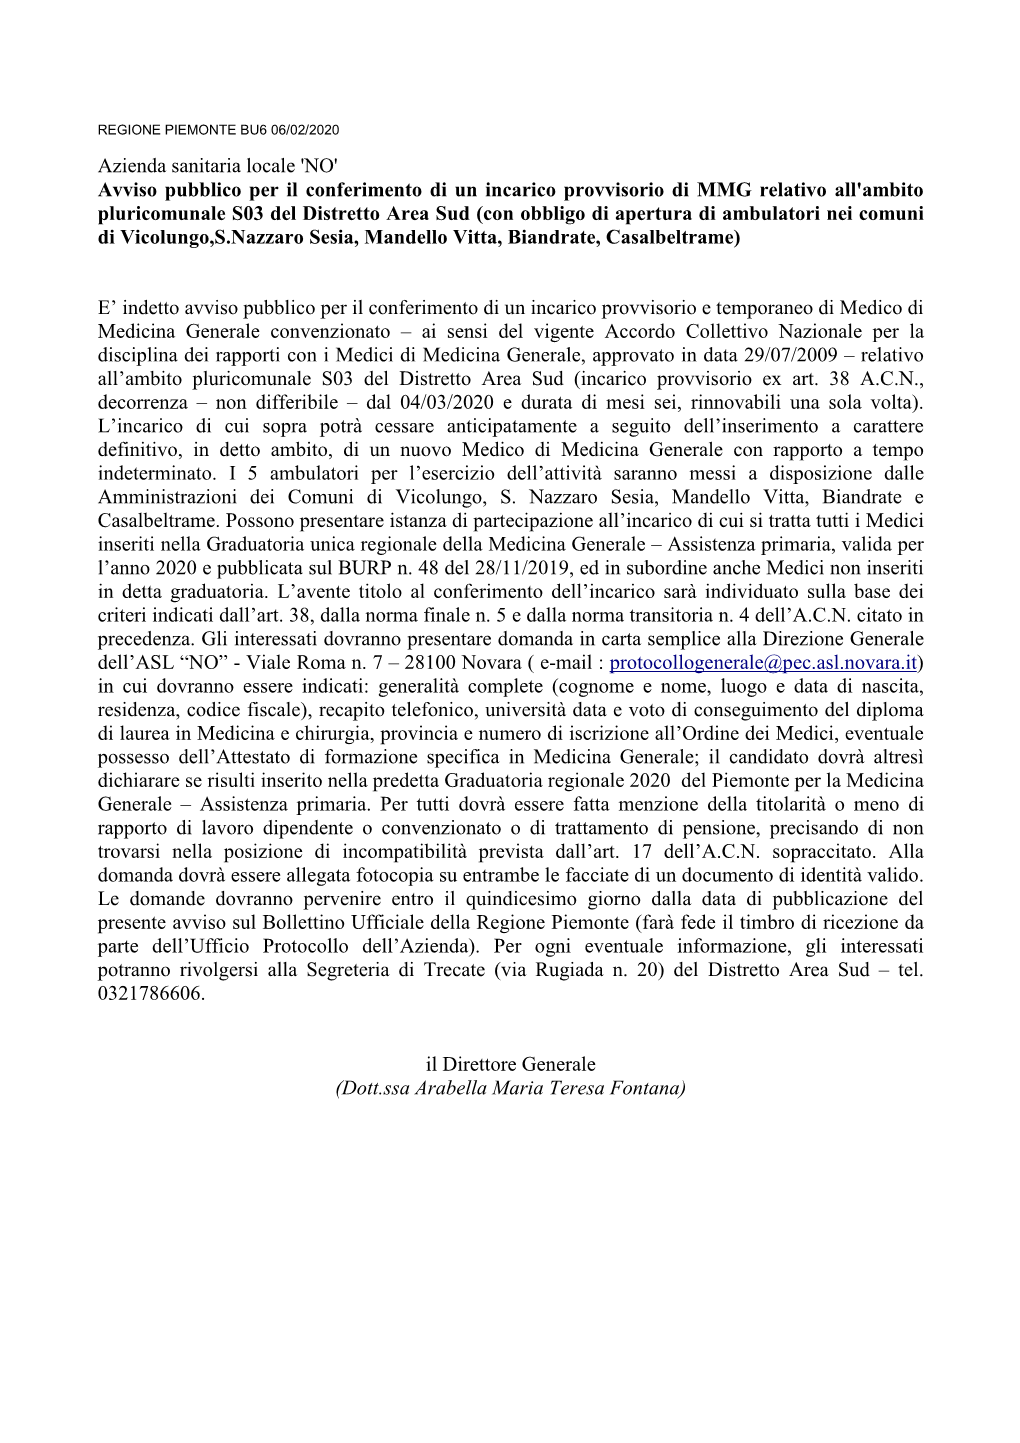 Co Azienda Sanitaria Locale No 2020-01-29 71437 Pdf